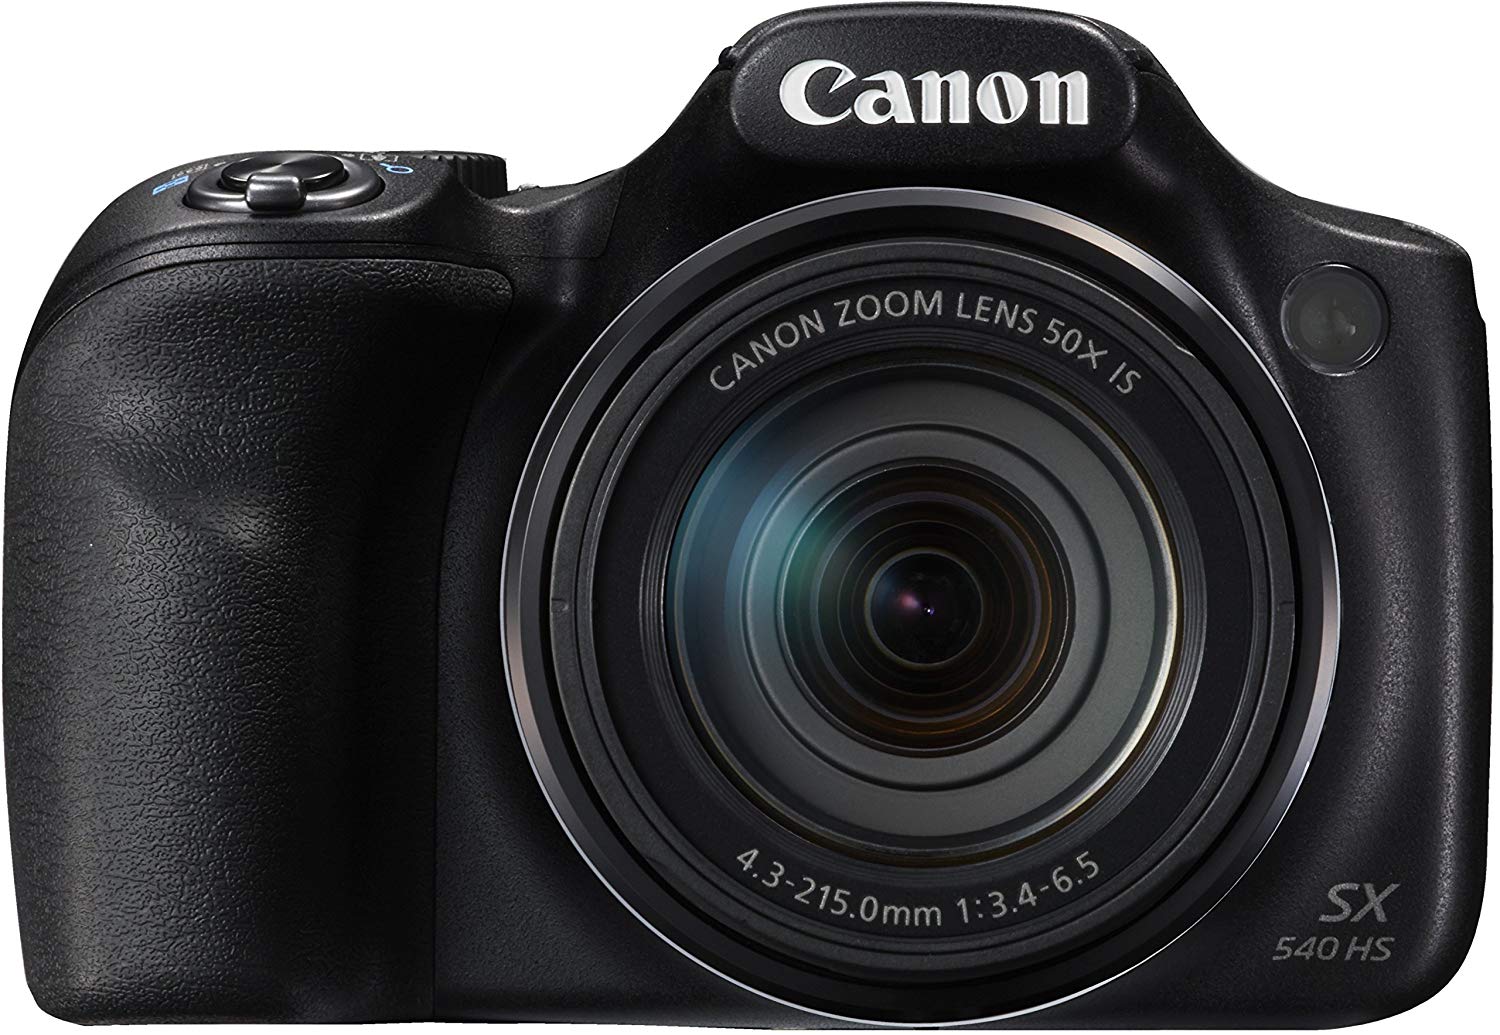 Op de 2 de plaats Bestsellers in Digitale camera's de Canon PowerShot sx540 HS